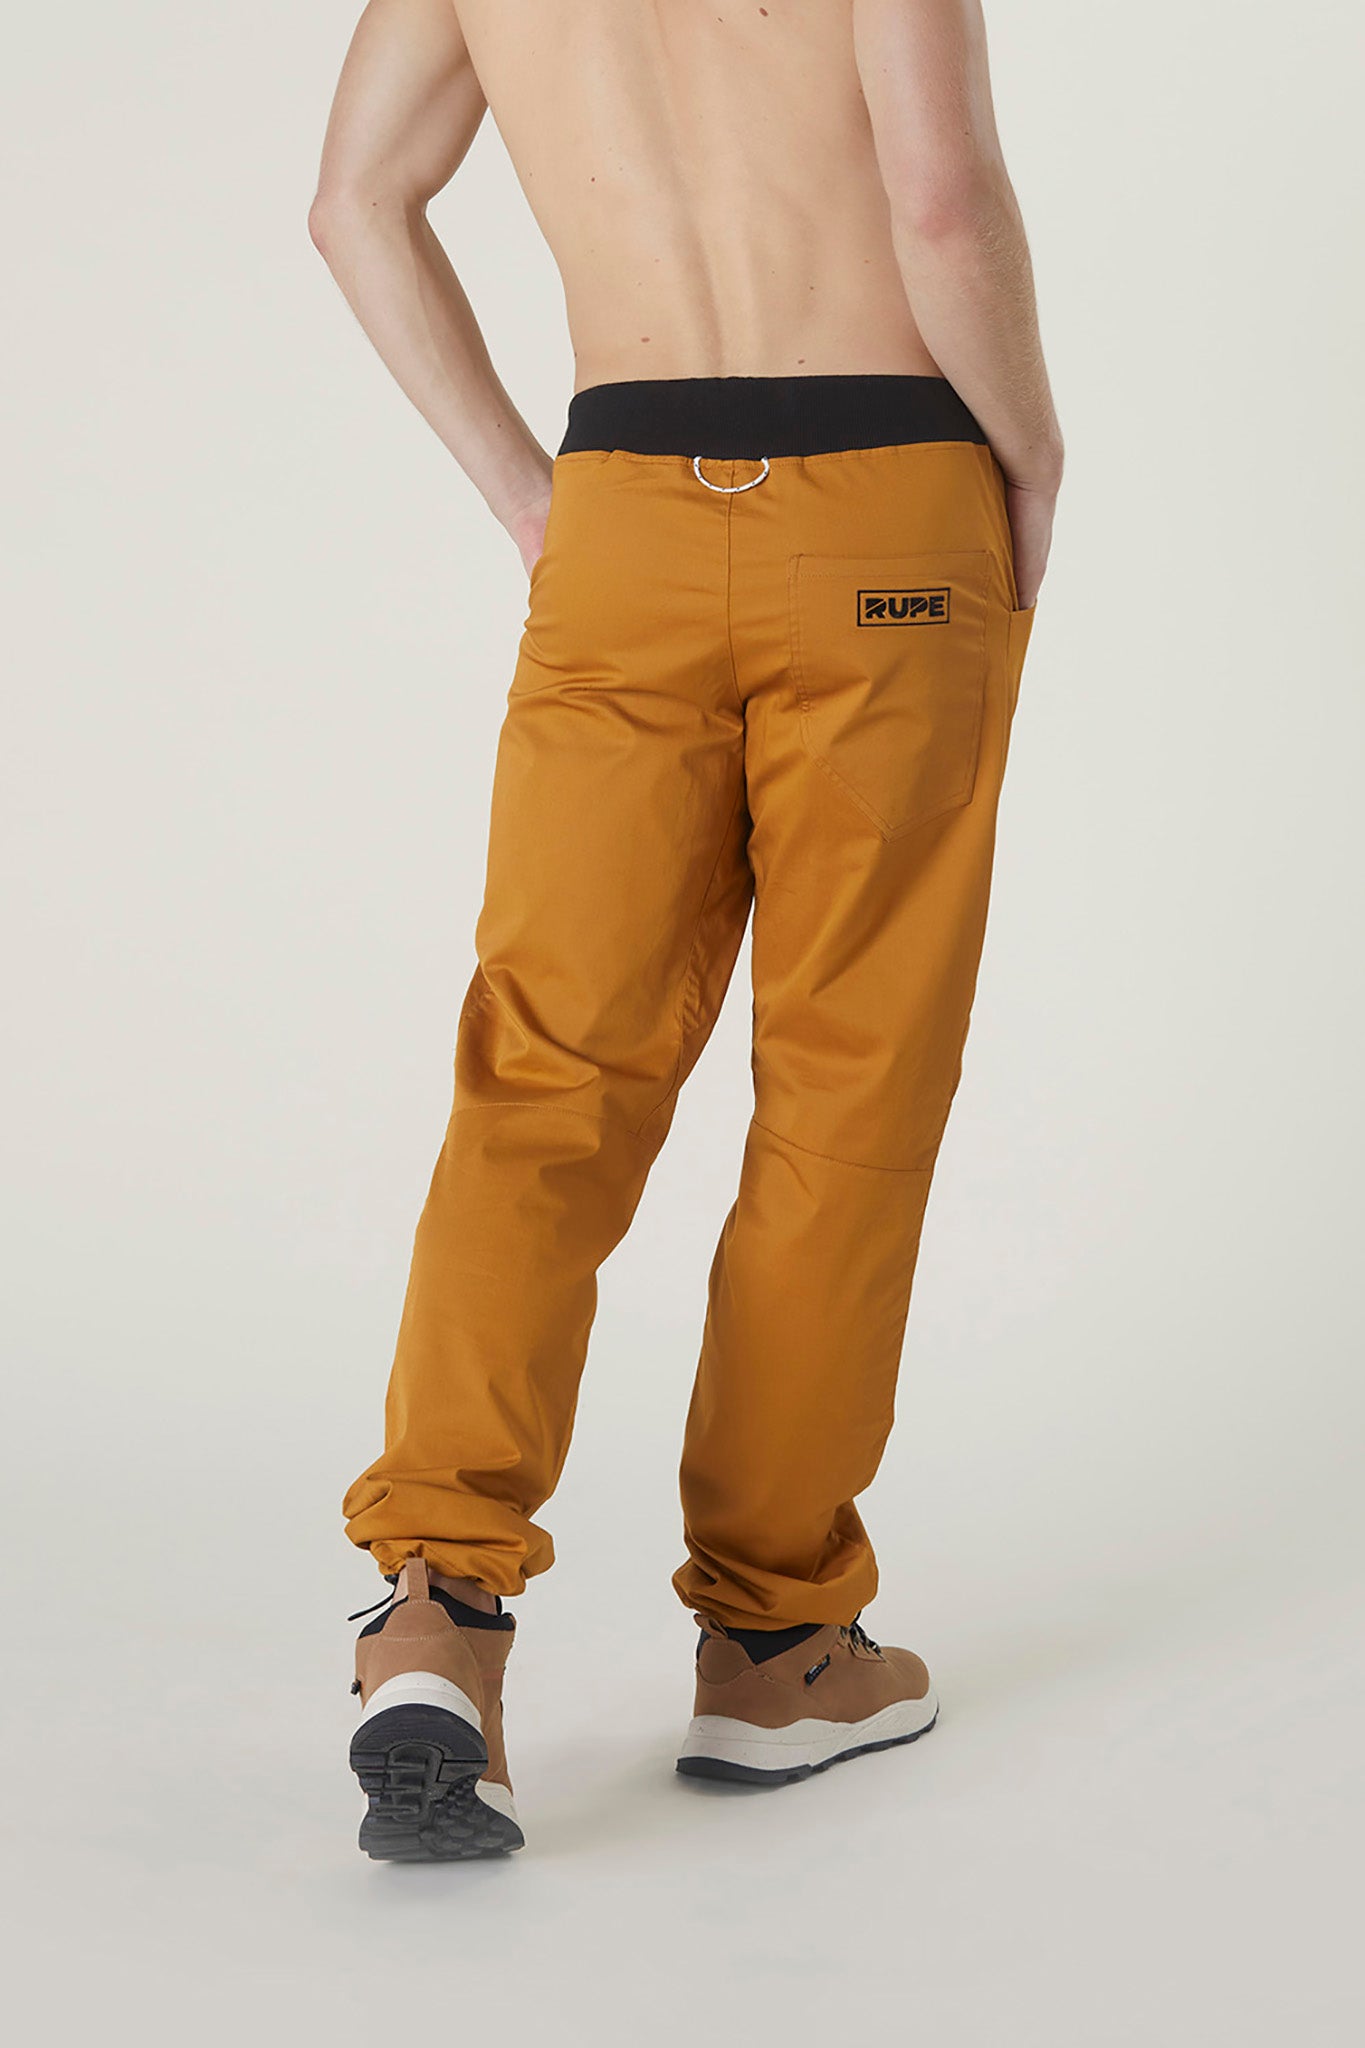 Pantalone Pirenei in Cotone per Arrampicata color Ocra